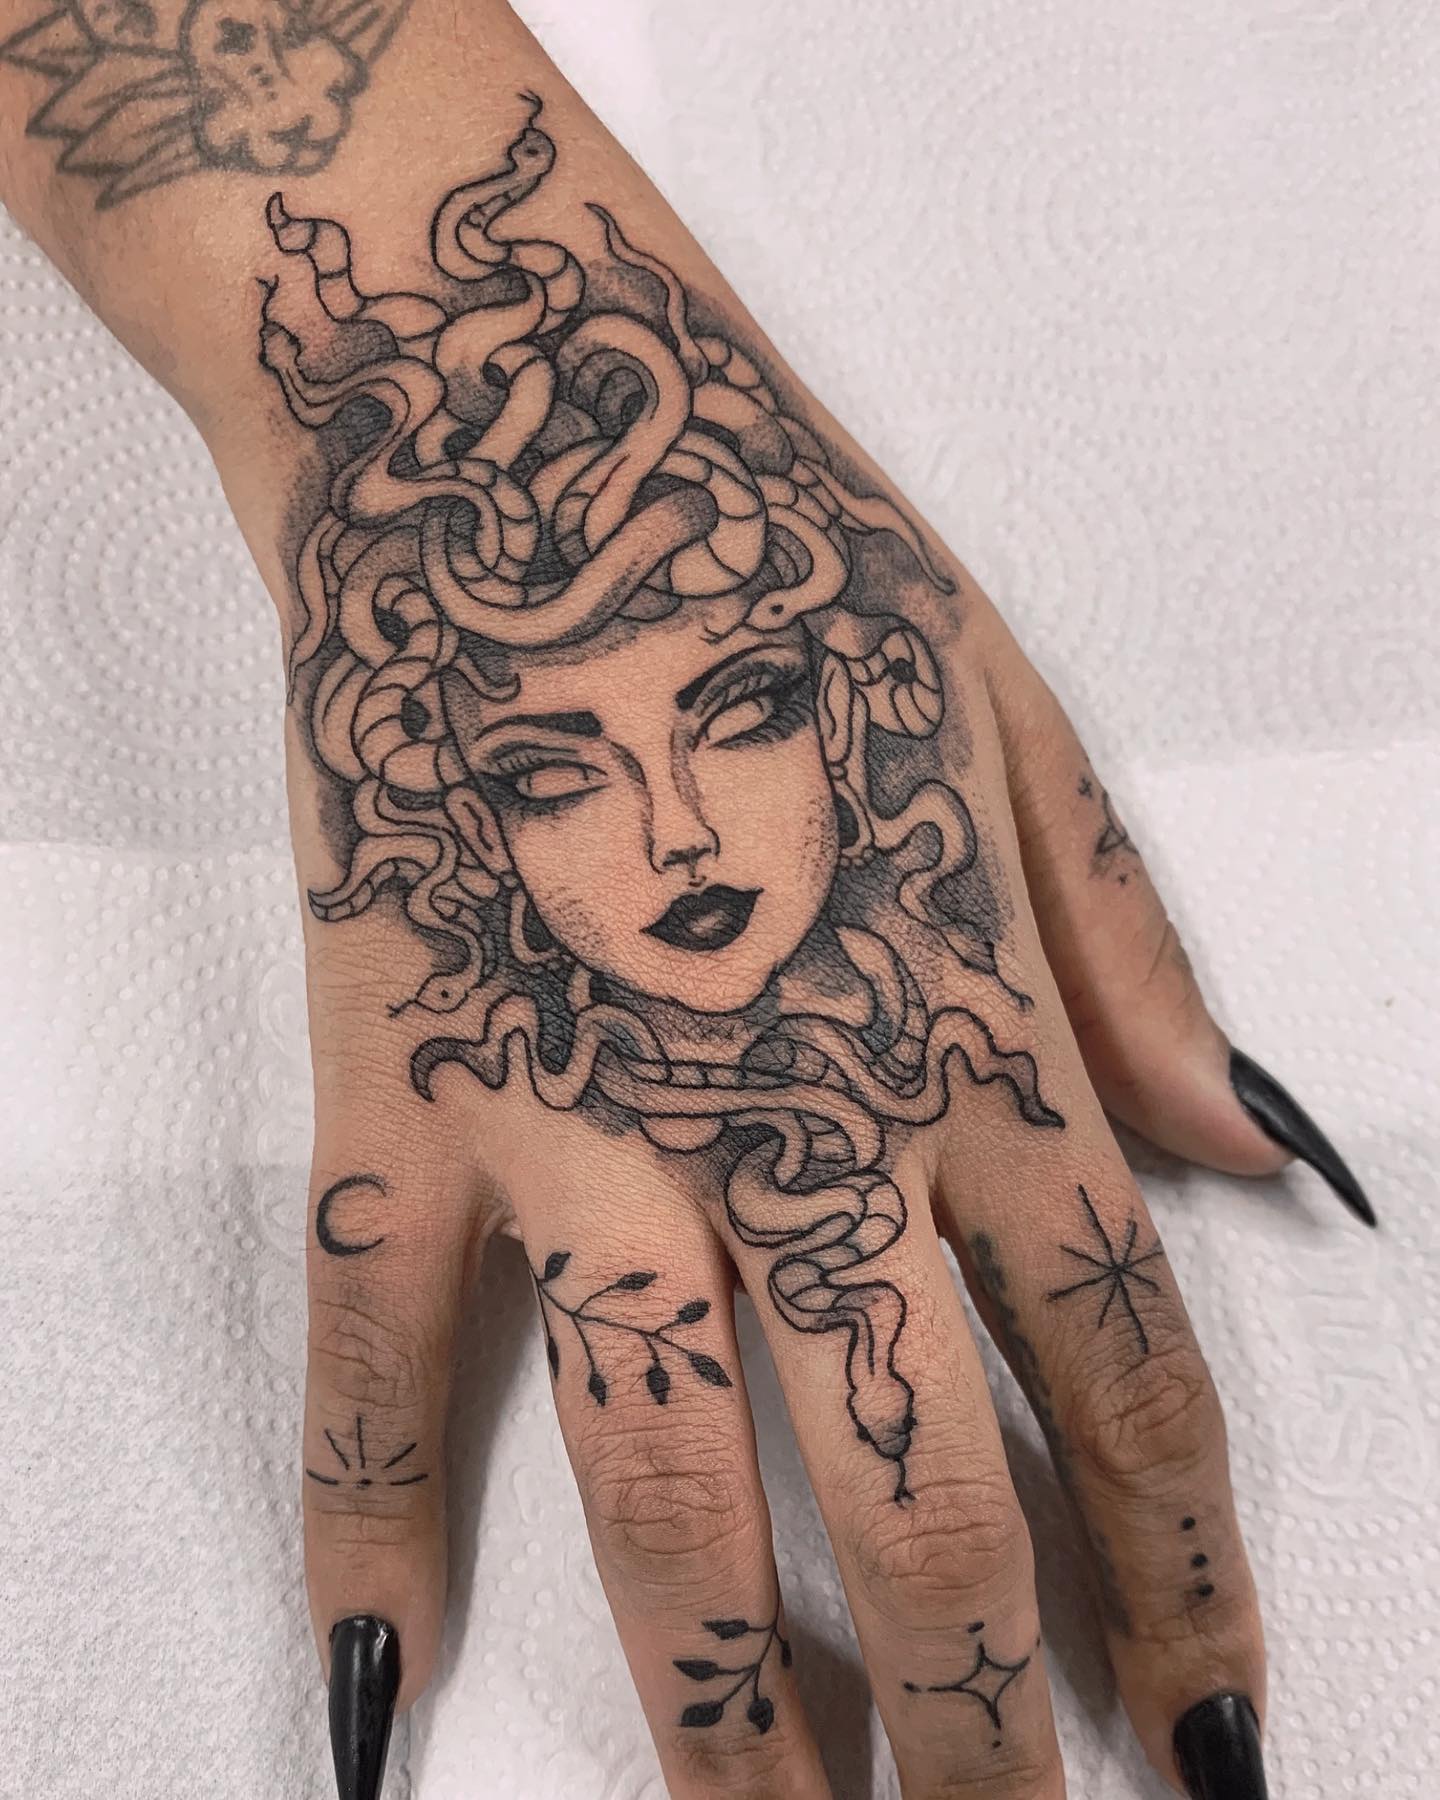 Tatuaje de Medusa en la mano.